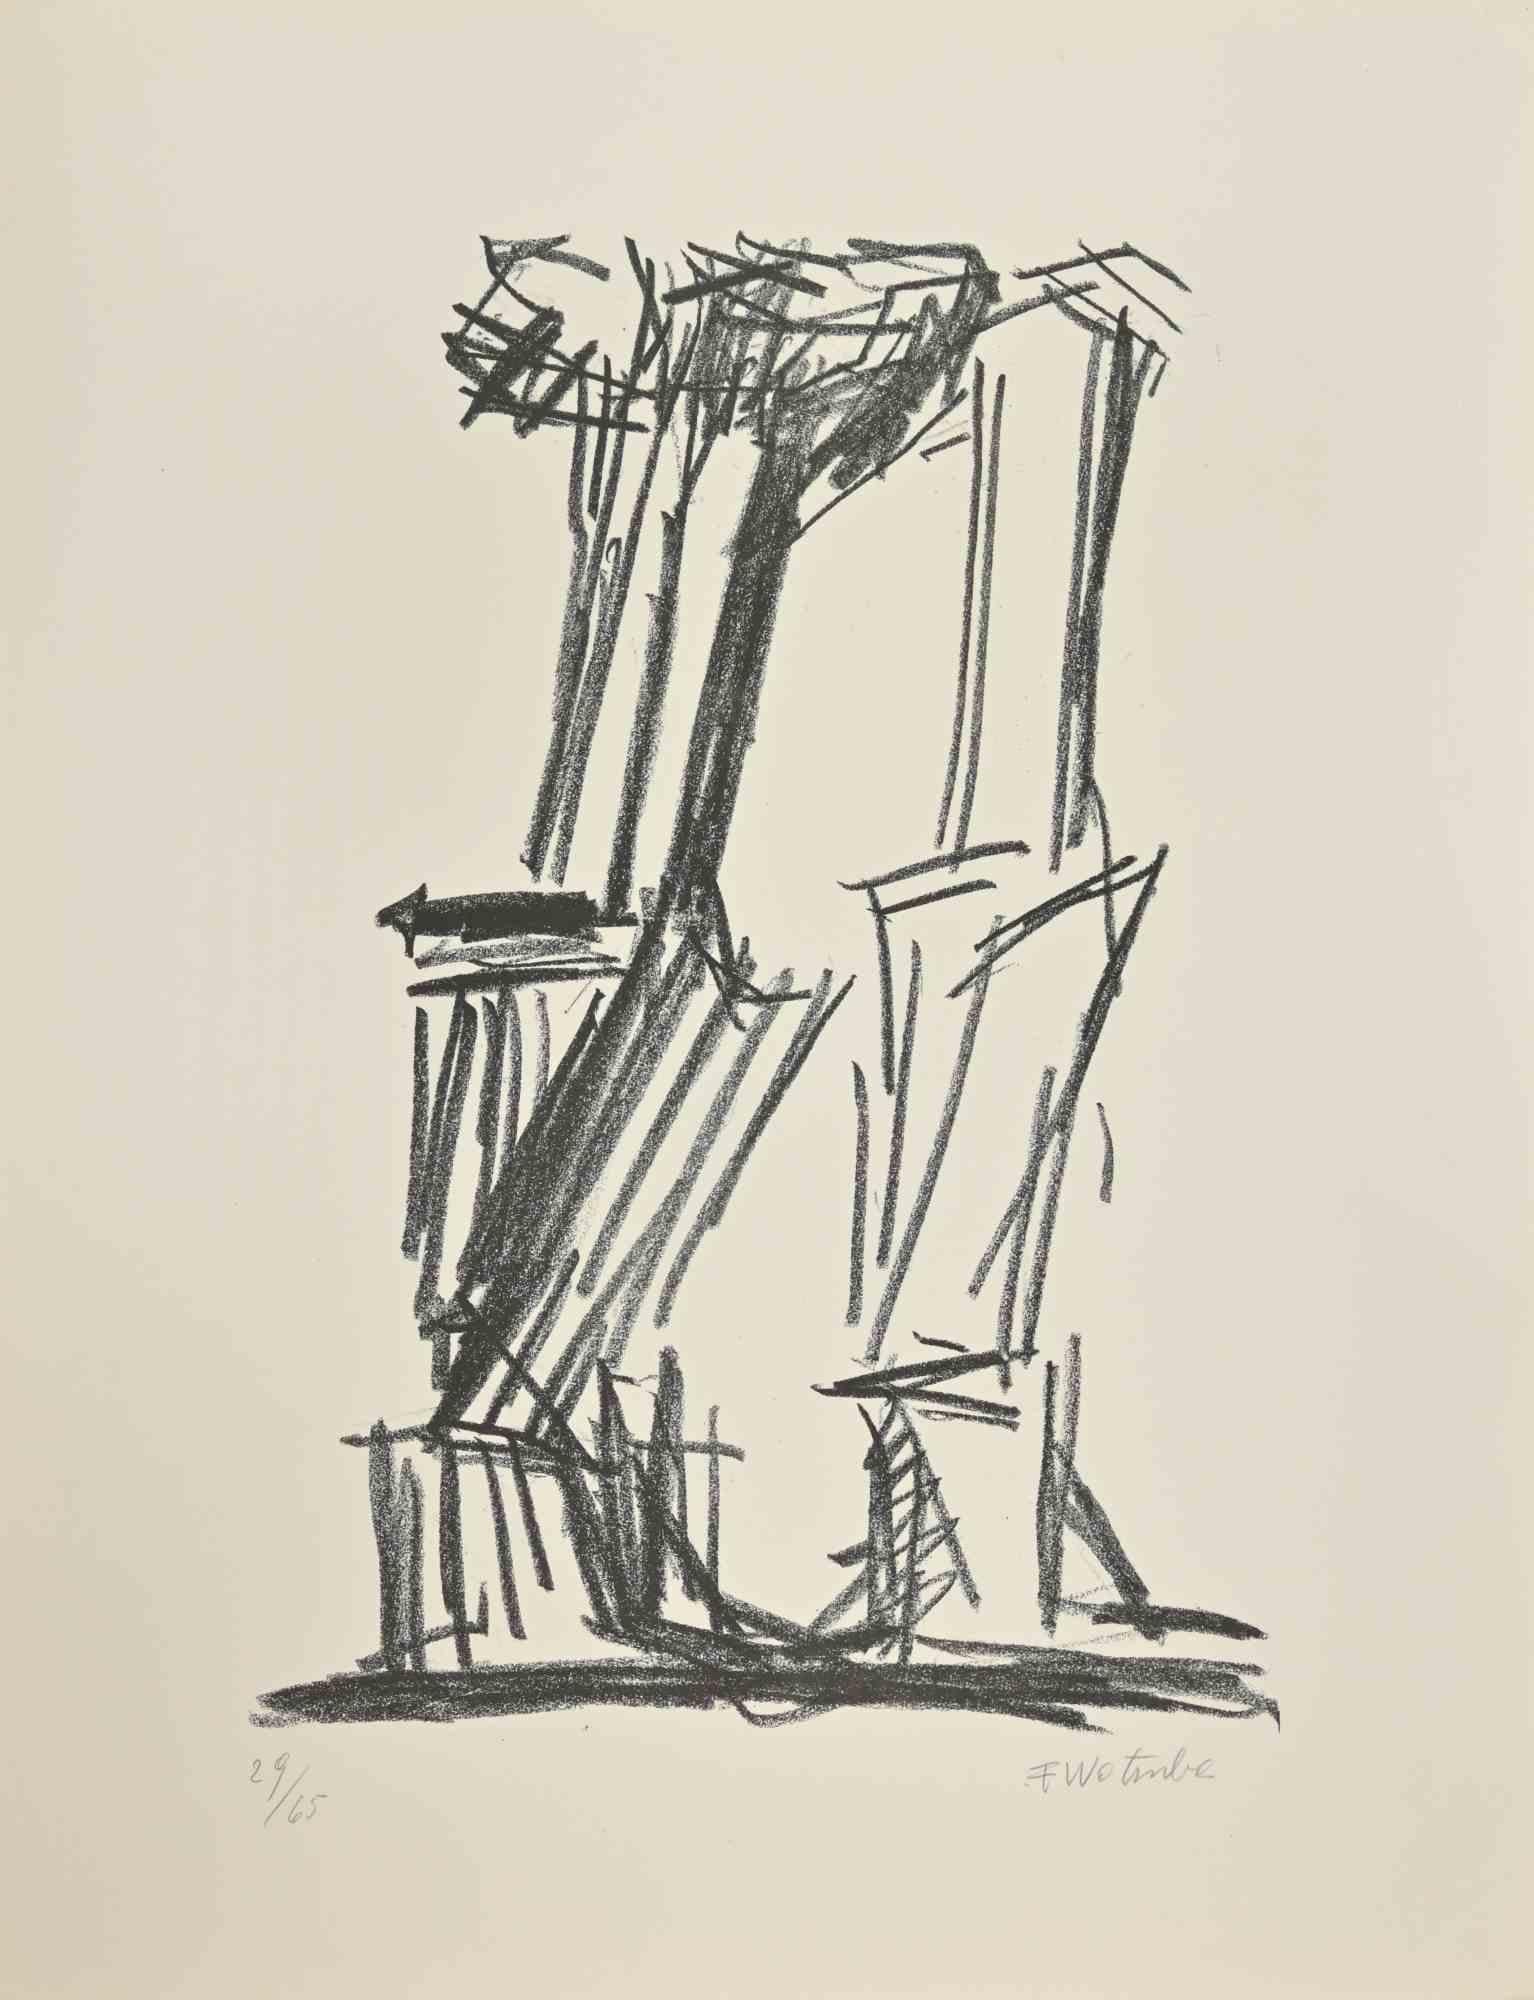 Sans titre  est une œuvre d'art réalisée par Fritz Wotruba (1907-1975). 

Lithographie 

65x50 cm

Signé et numéroté (exemplaire 29/65) au crayon au recto.

Timbre aveugle Kettere - Monaco

Bonnes conditions ! 